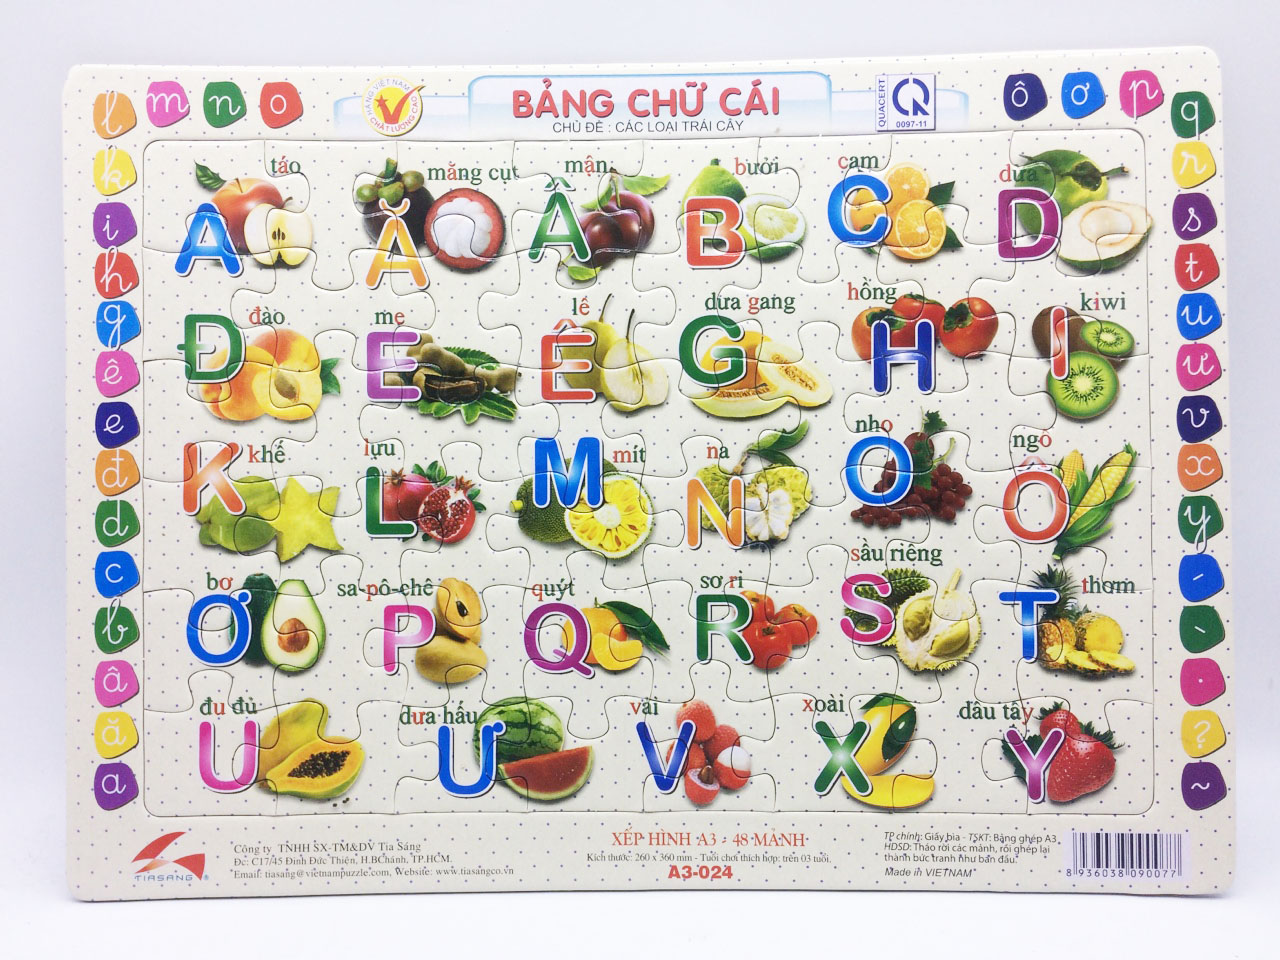 Bộ 2 tấm xếp hình Số  và chữ cái Tiếng Việt, Xếp hình 48 mảnh. Tia Sáng Việt Nam. Đồ chơi trí tuệ cho bé trên 3 tuổi. Chứng nhận chất lượng tên chủng loại: Xếp hình số mảnh ghép lên đến 250 mảnh. Ký hiệu: Xếp hình.